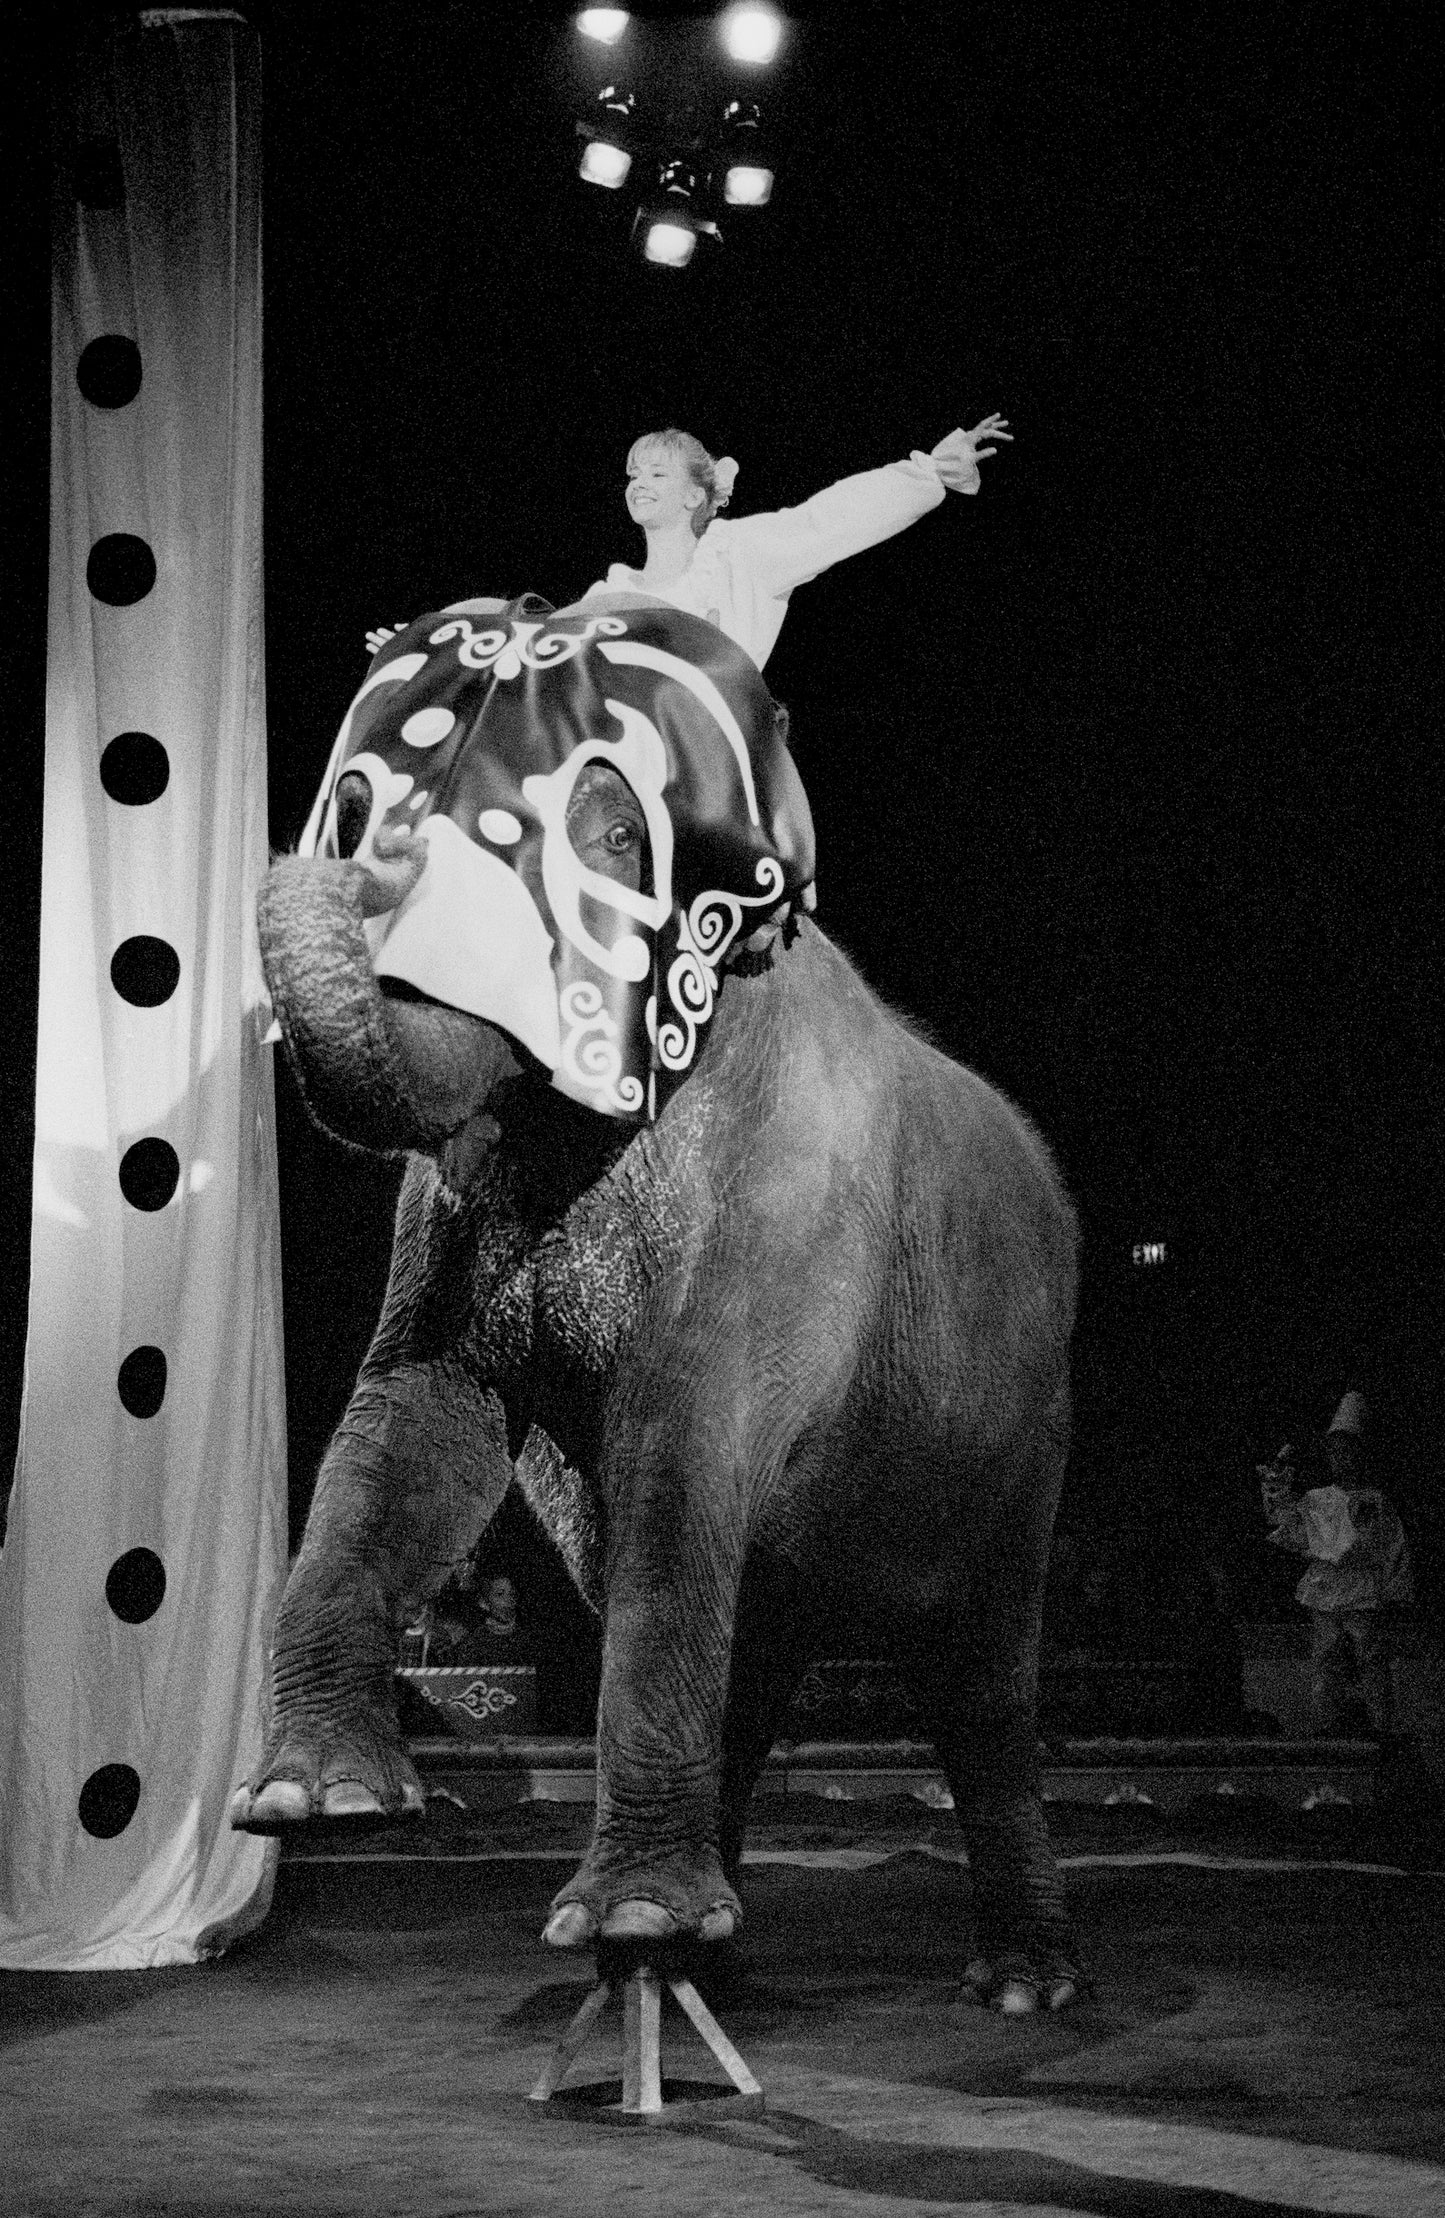 Big Apple Circus #5 NYC 1994